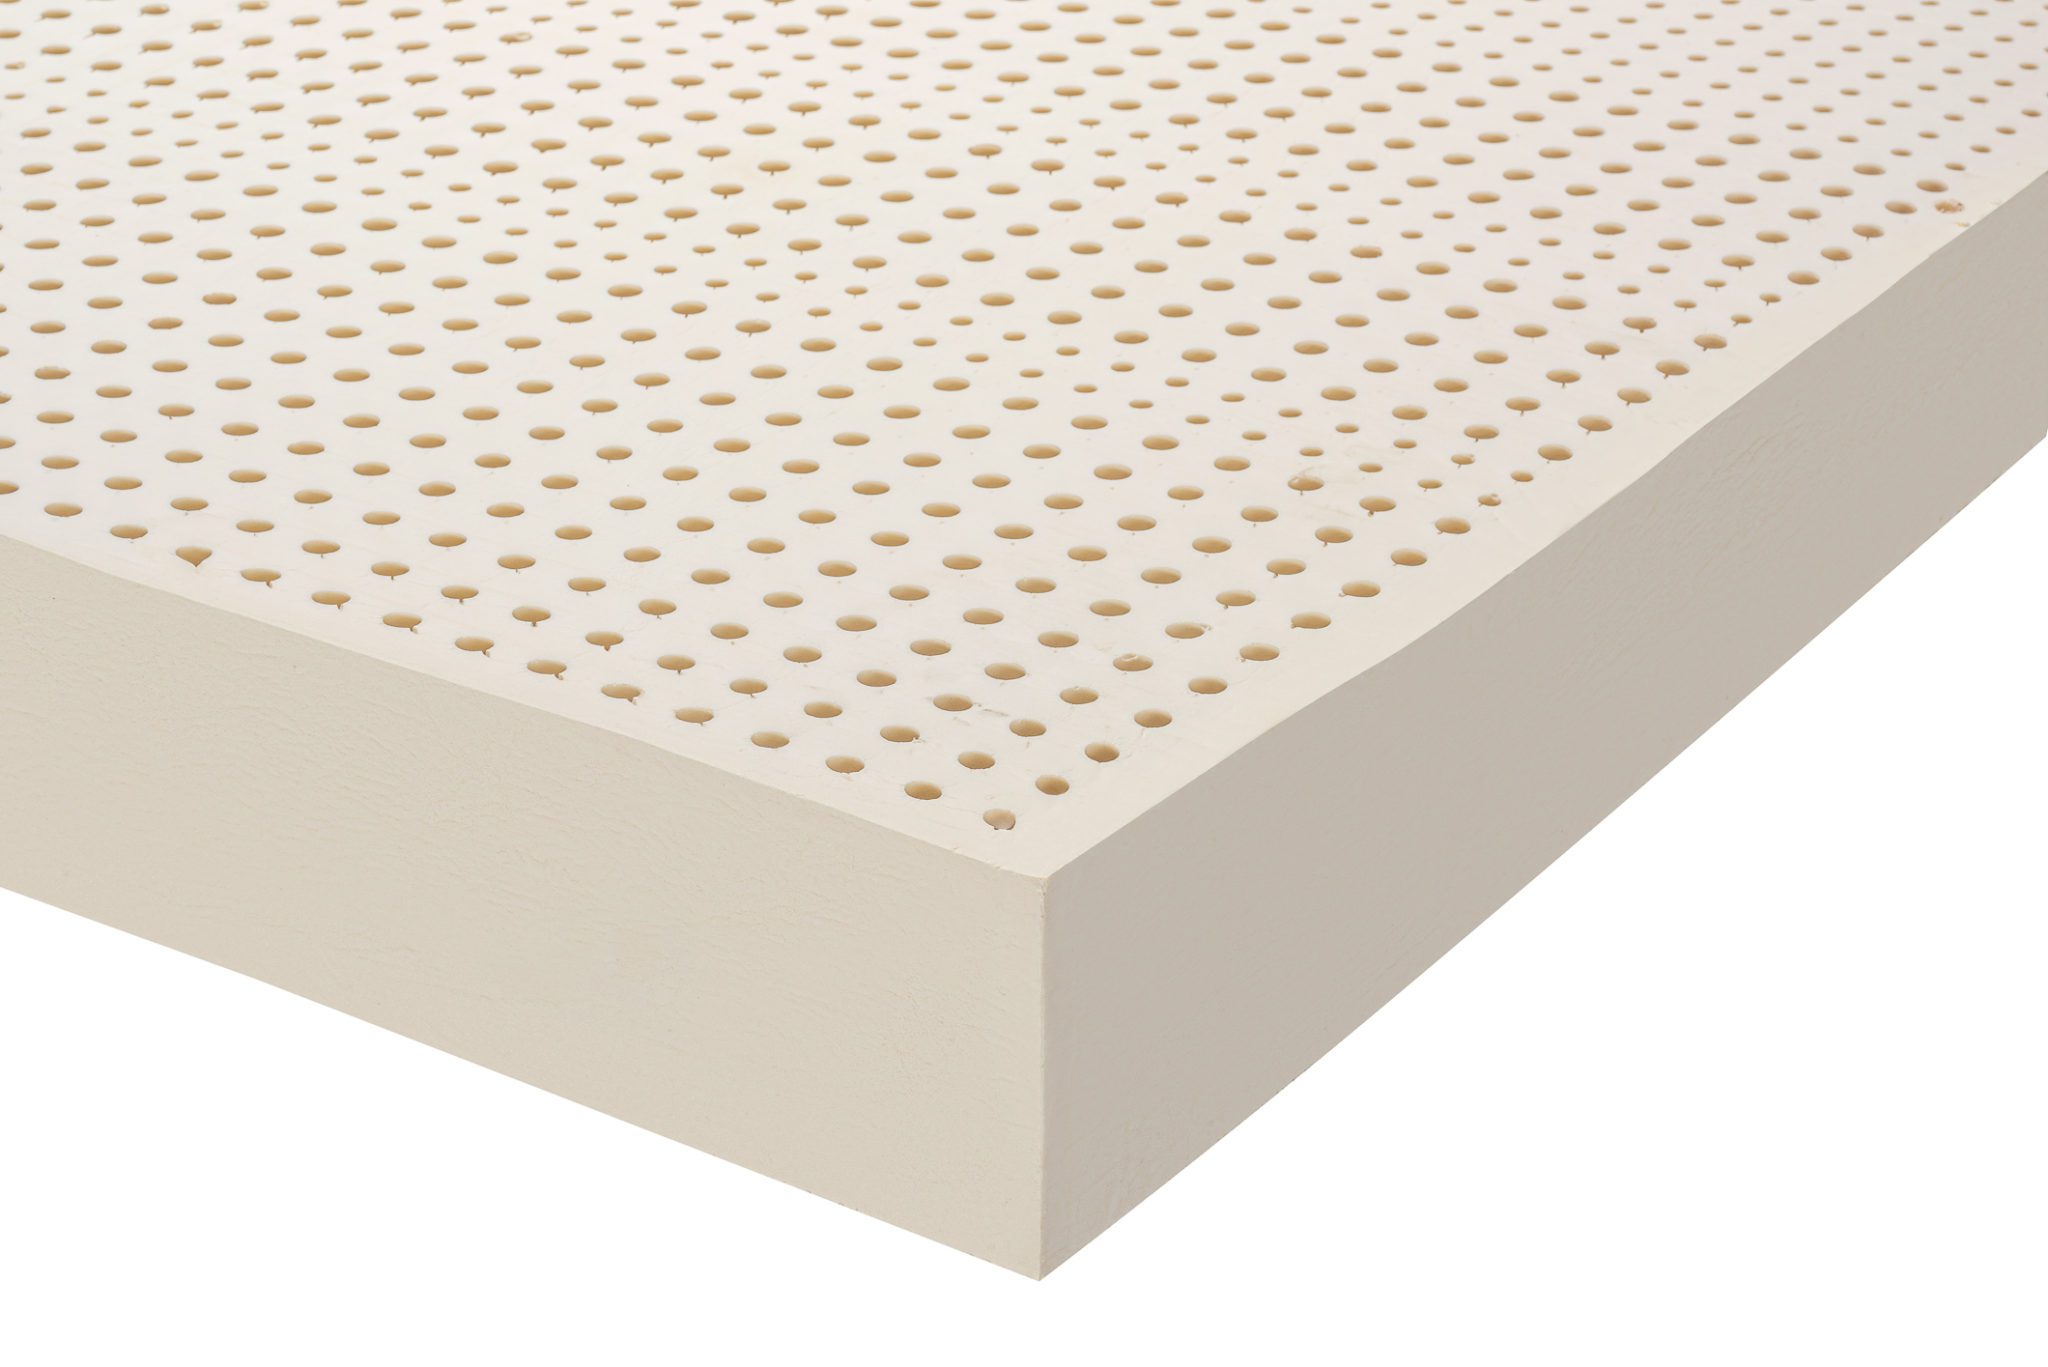 zoned mattress firming enhancer